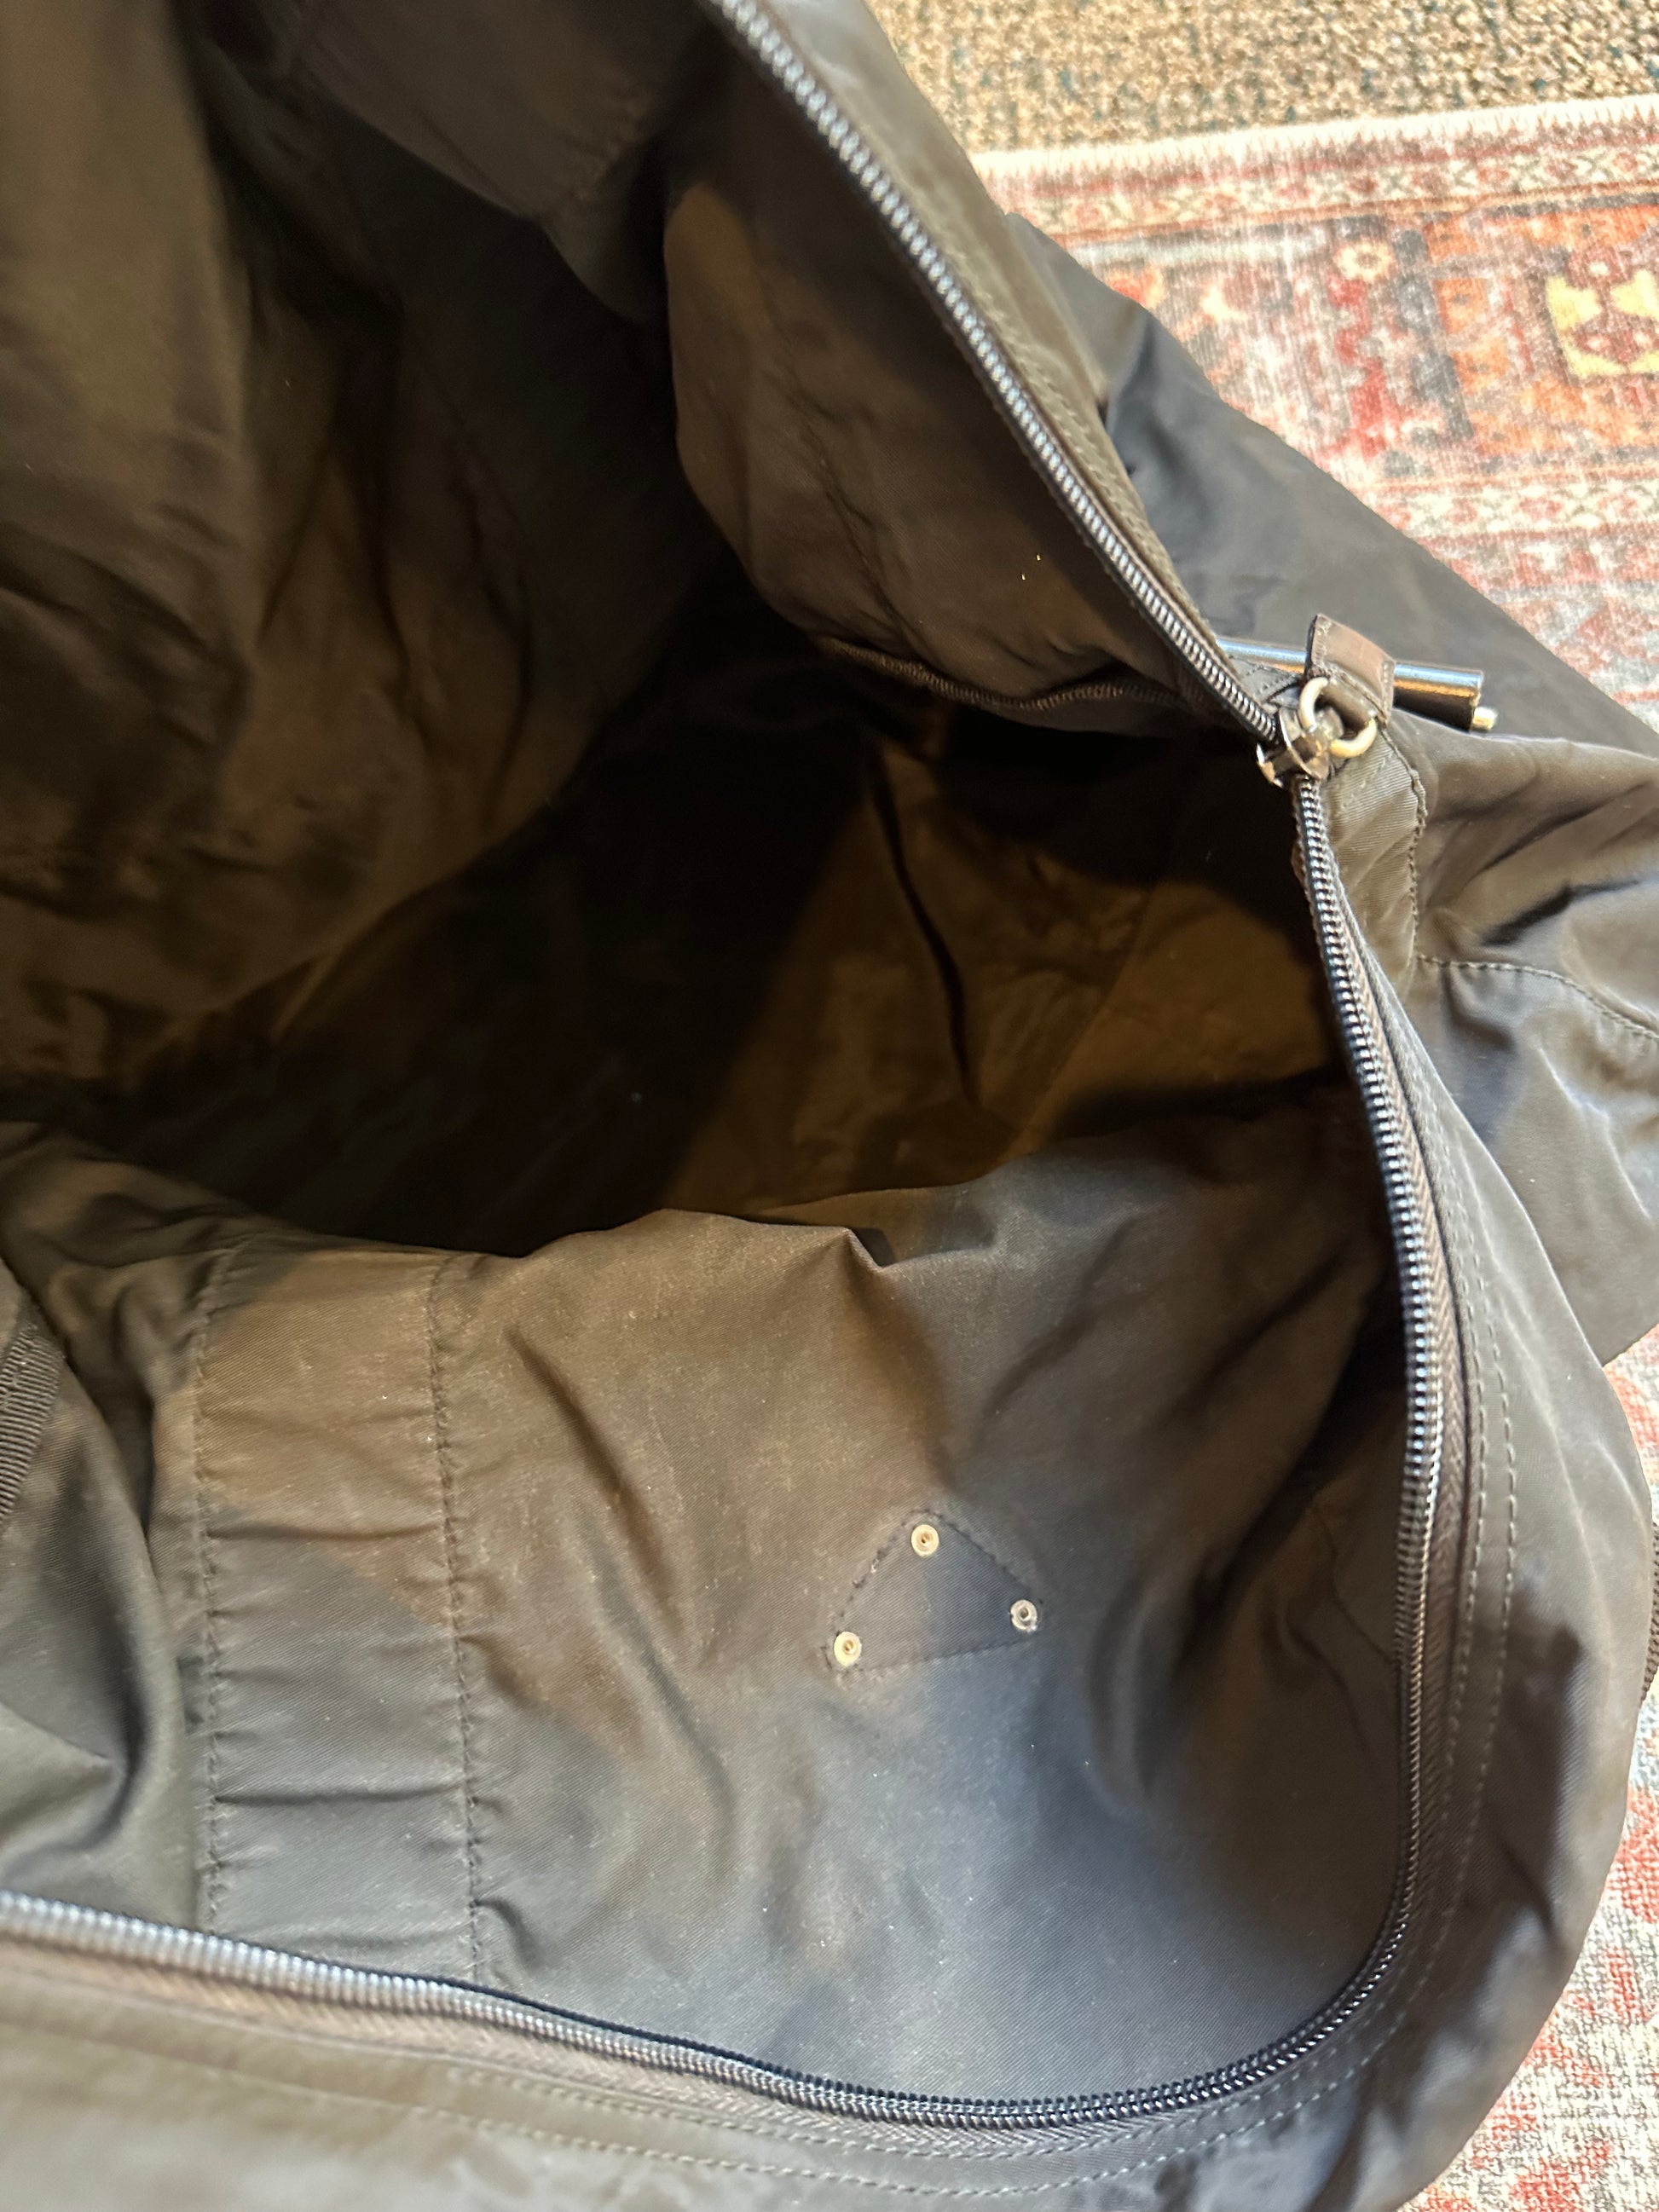 Prada Tessuto Duffle Bag – never ending boutique